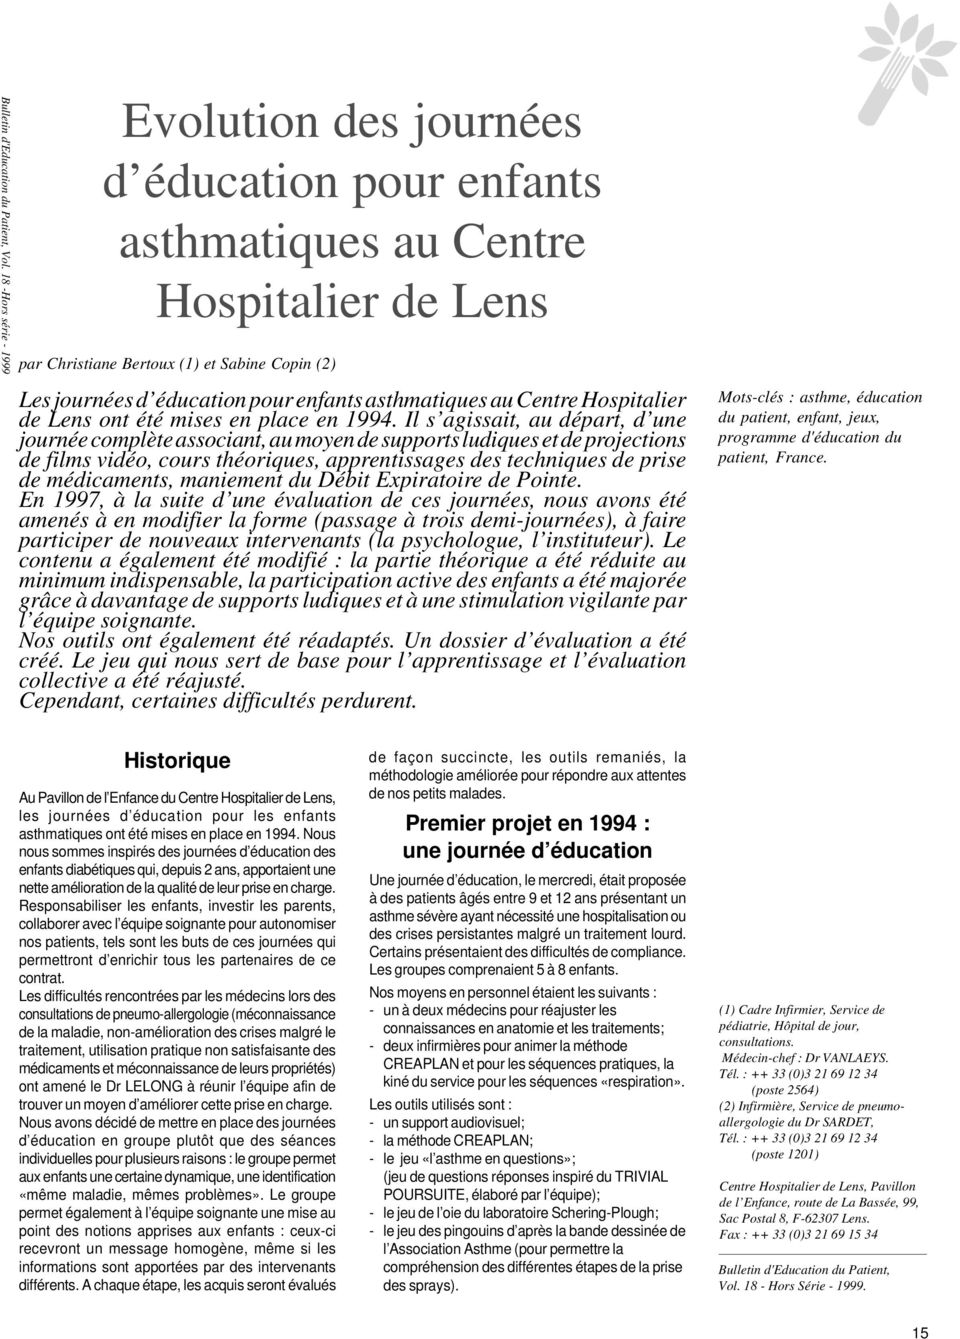 asthmatiques au Centre Hospitalier de Lens ont été mises en place en 1994.